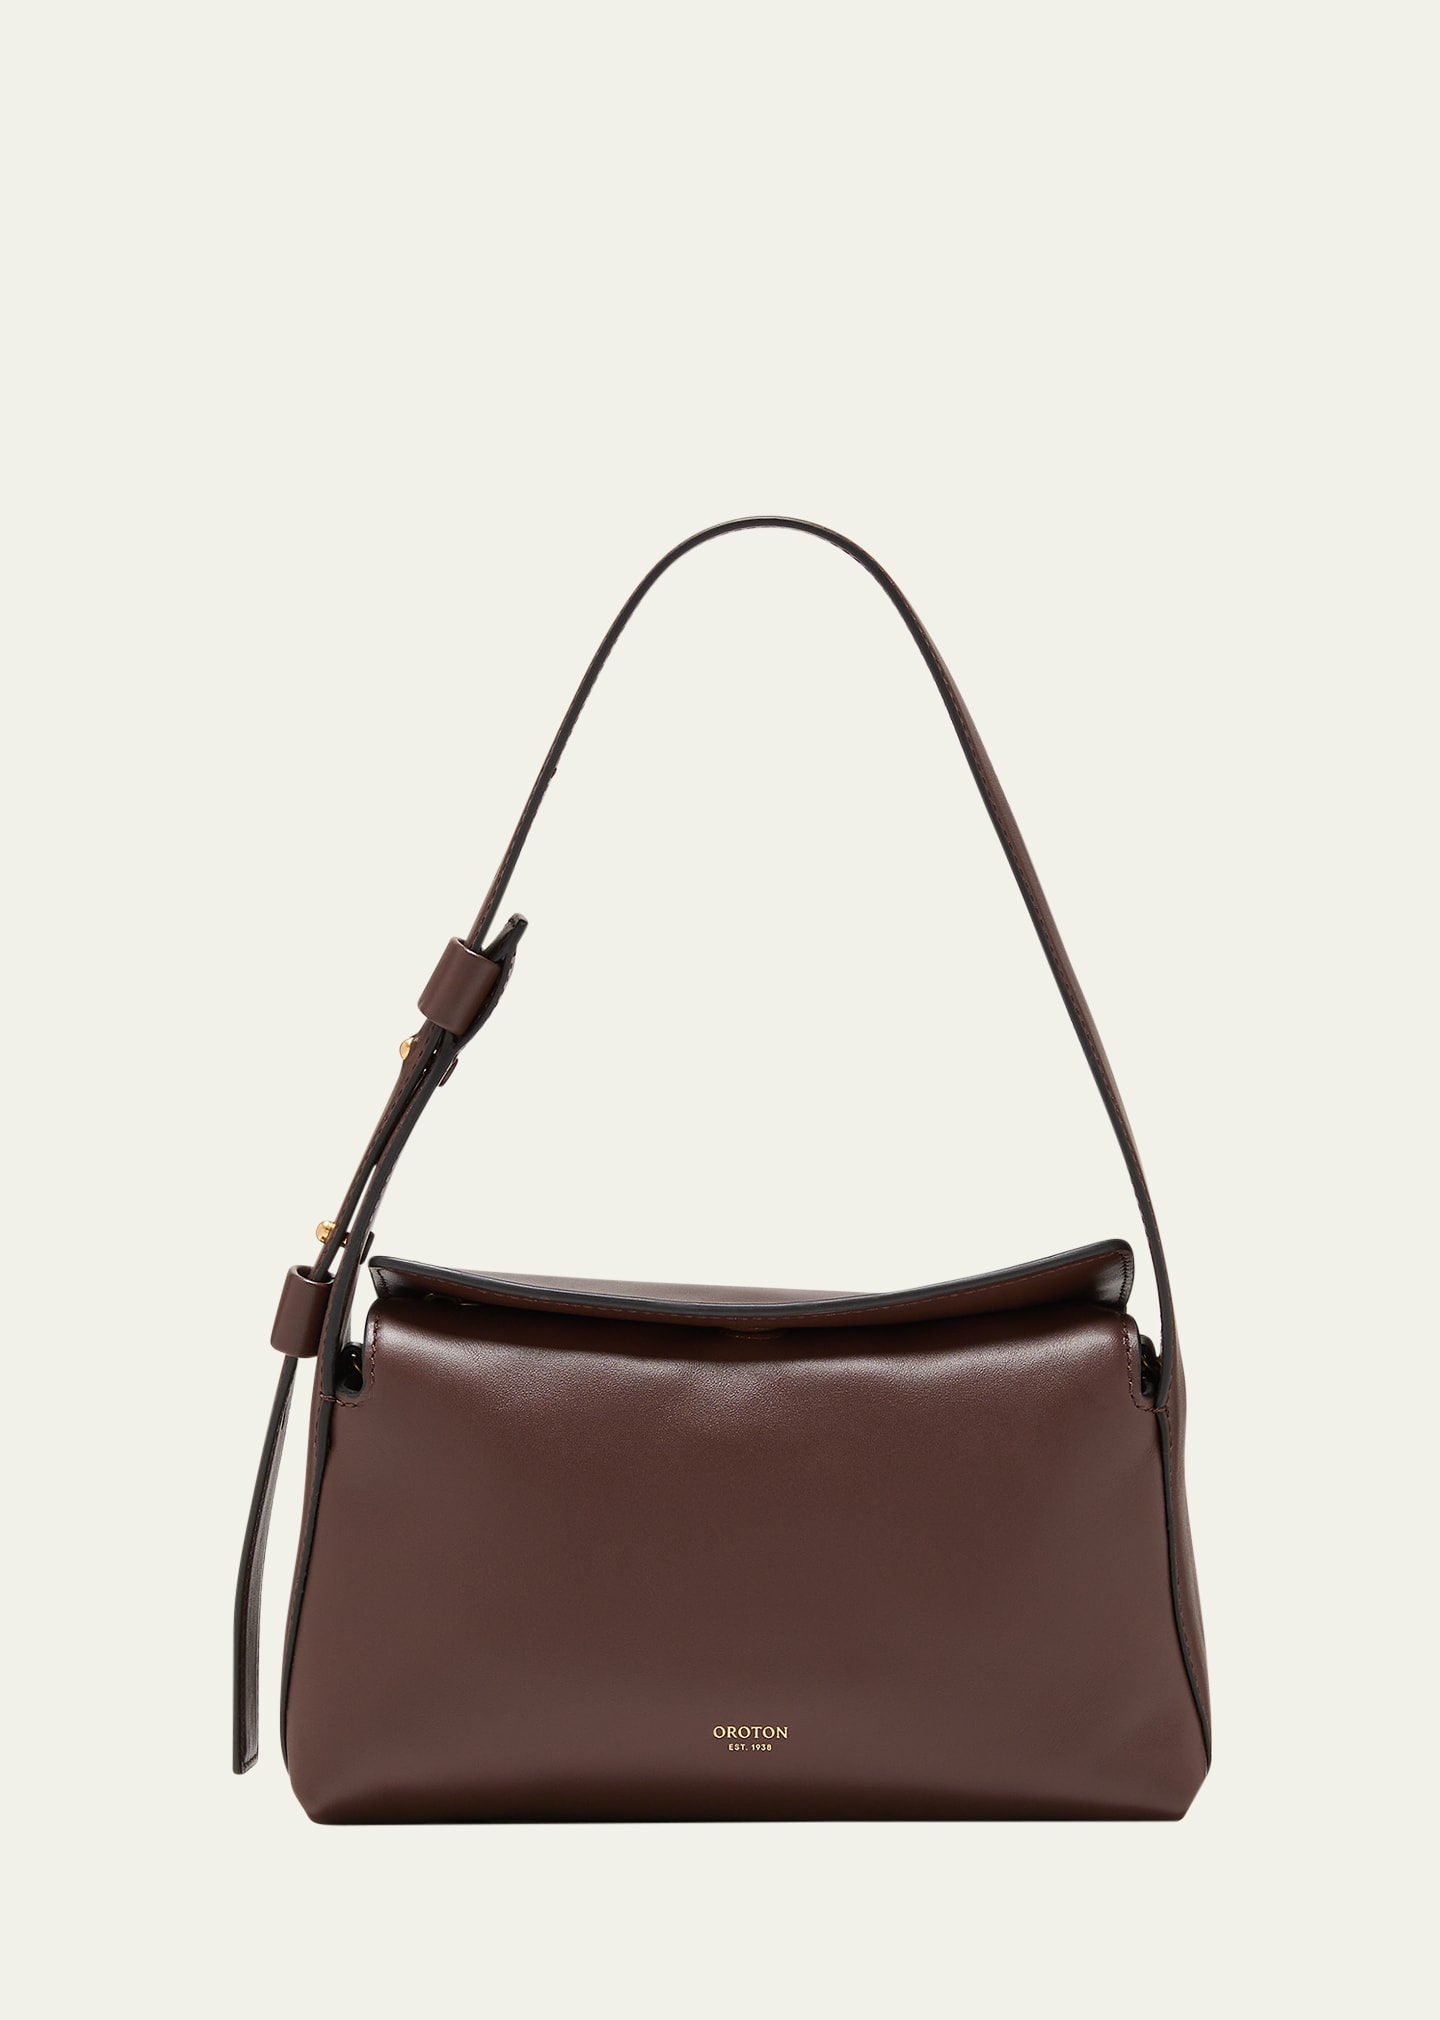 Caroline Small Leather Shoulder Bag